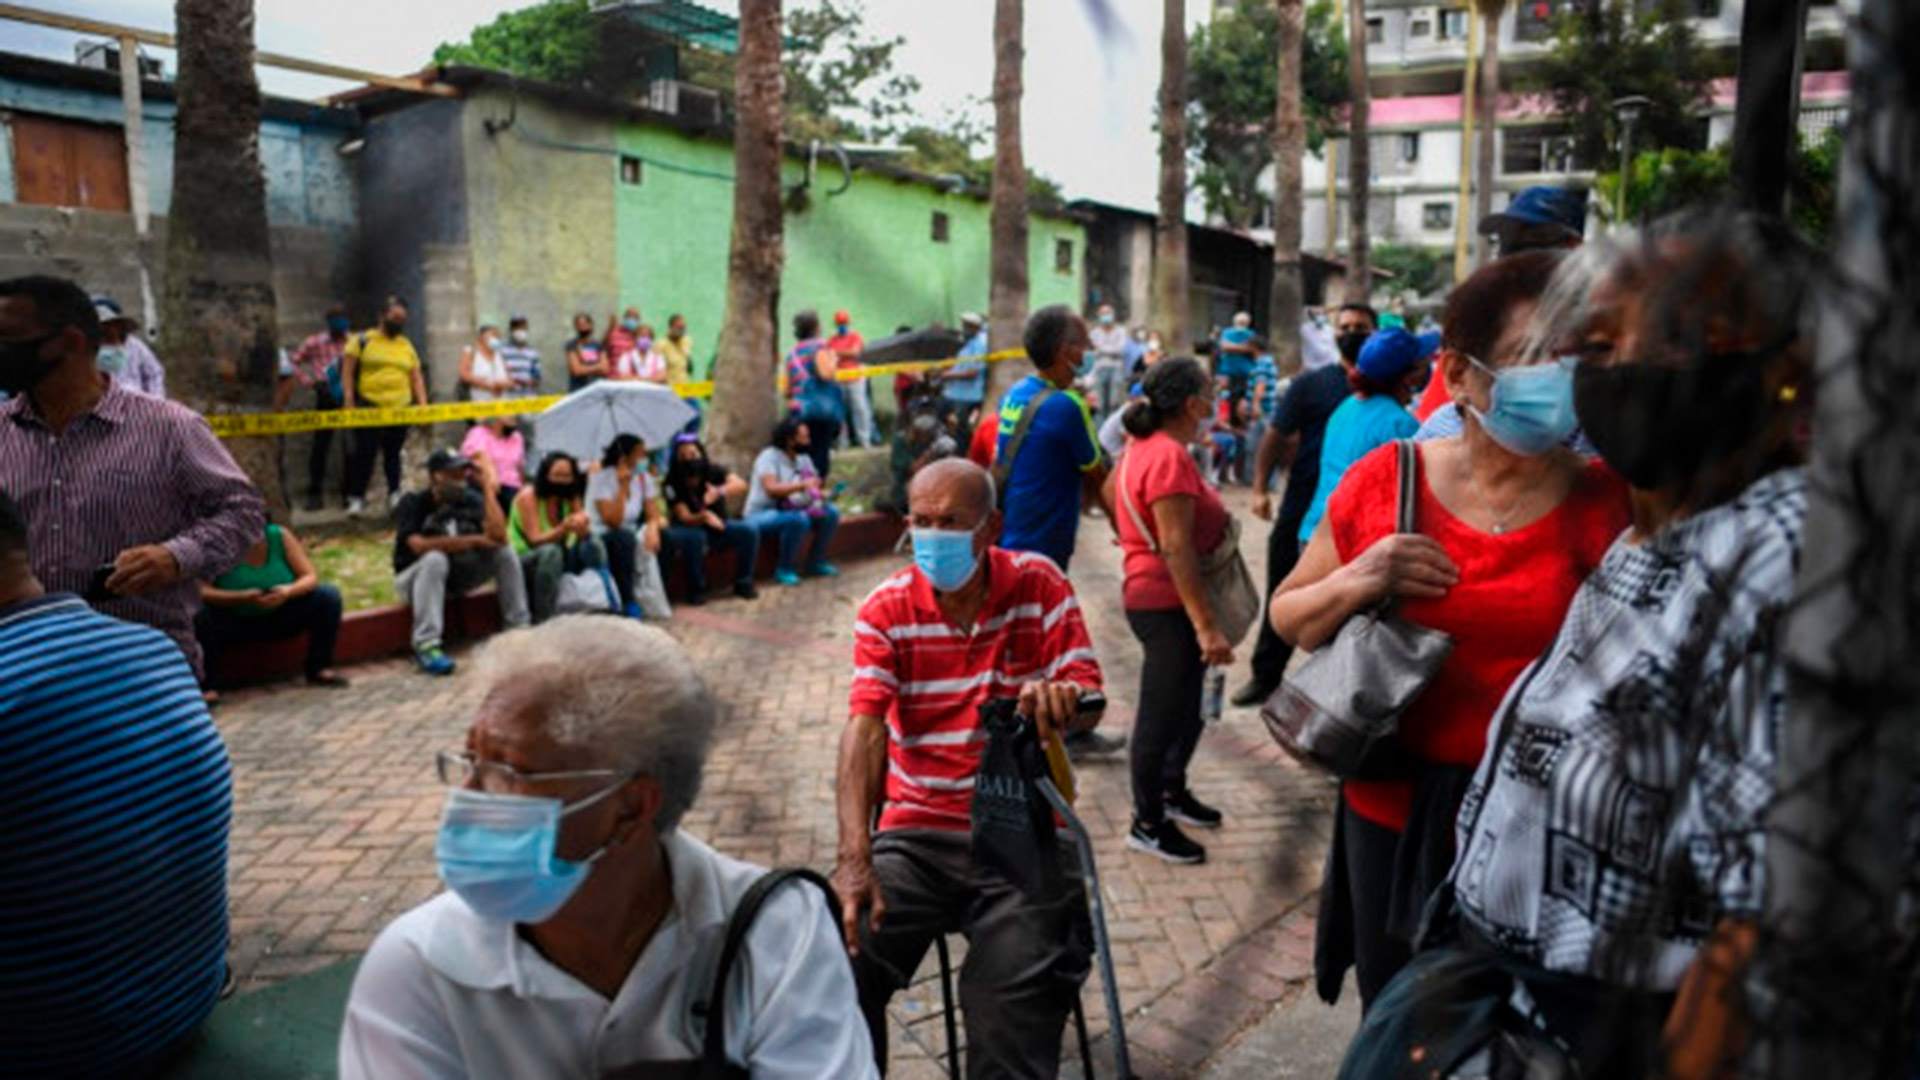 La población venezolana parece estar presa de las filas para todas las actividades que emprendan en su vida diaria, incluso vacunarse contra el COVID-19 en este vecindario de Caracas (AFP)